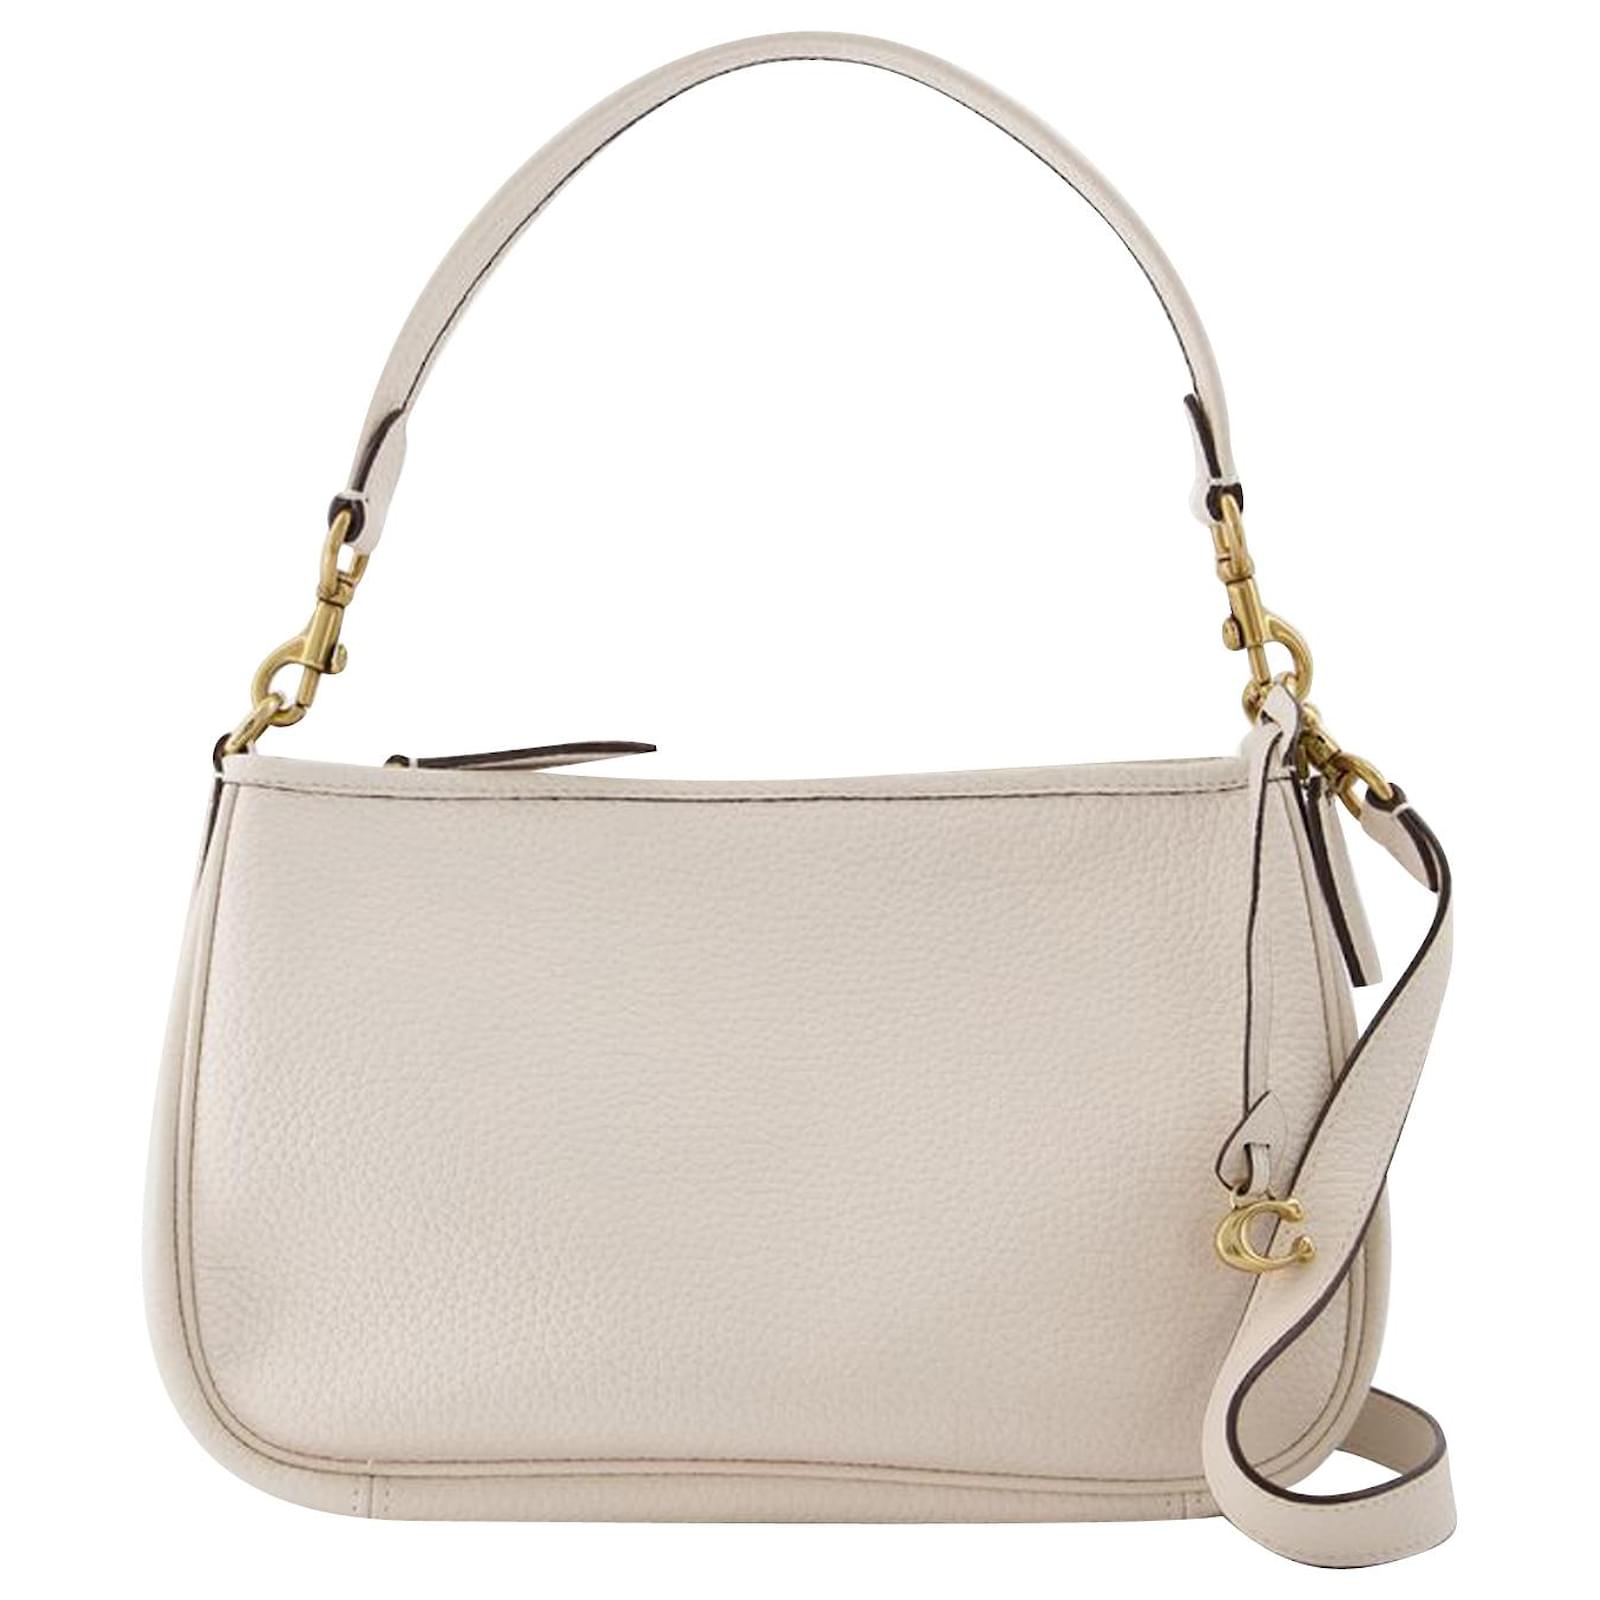 COACH 9541 Soho Small Ivory Leather Hobo Handbag Purse | eBay